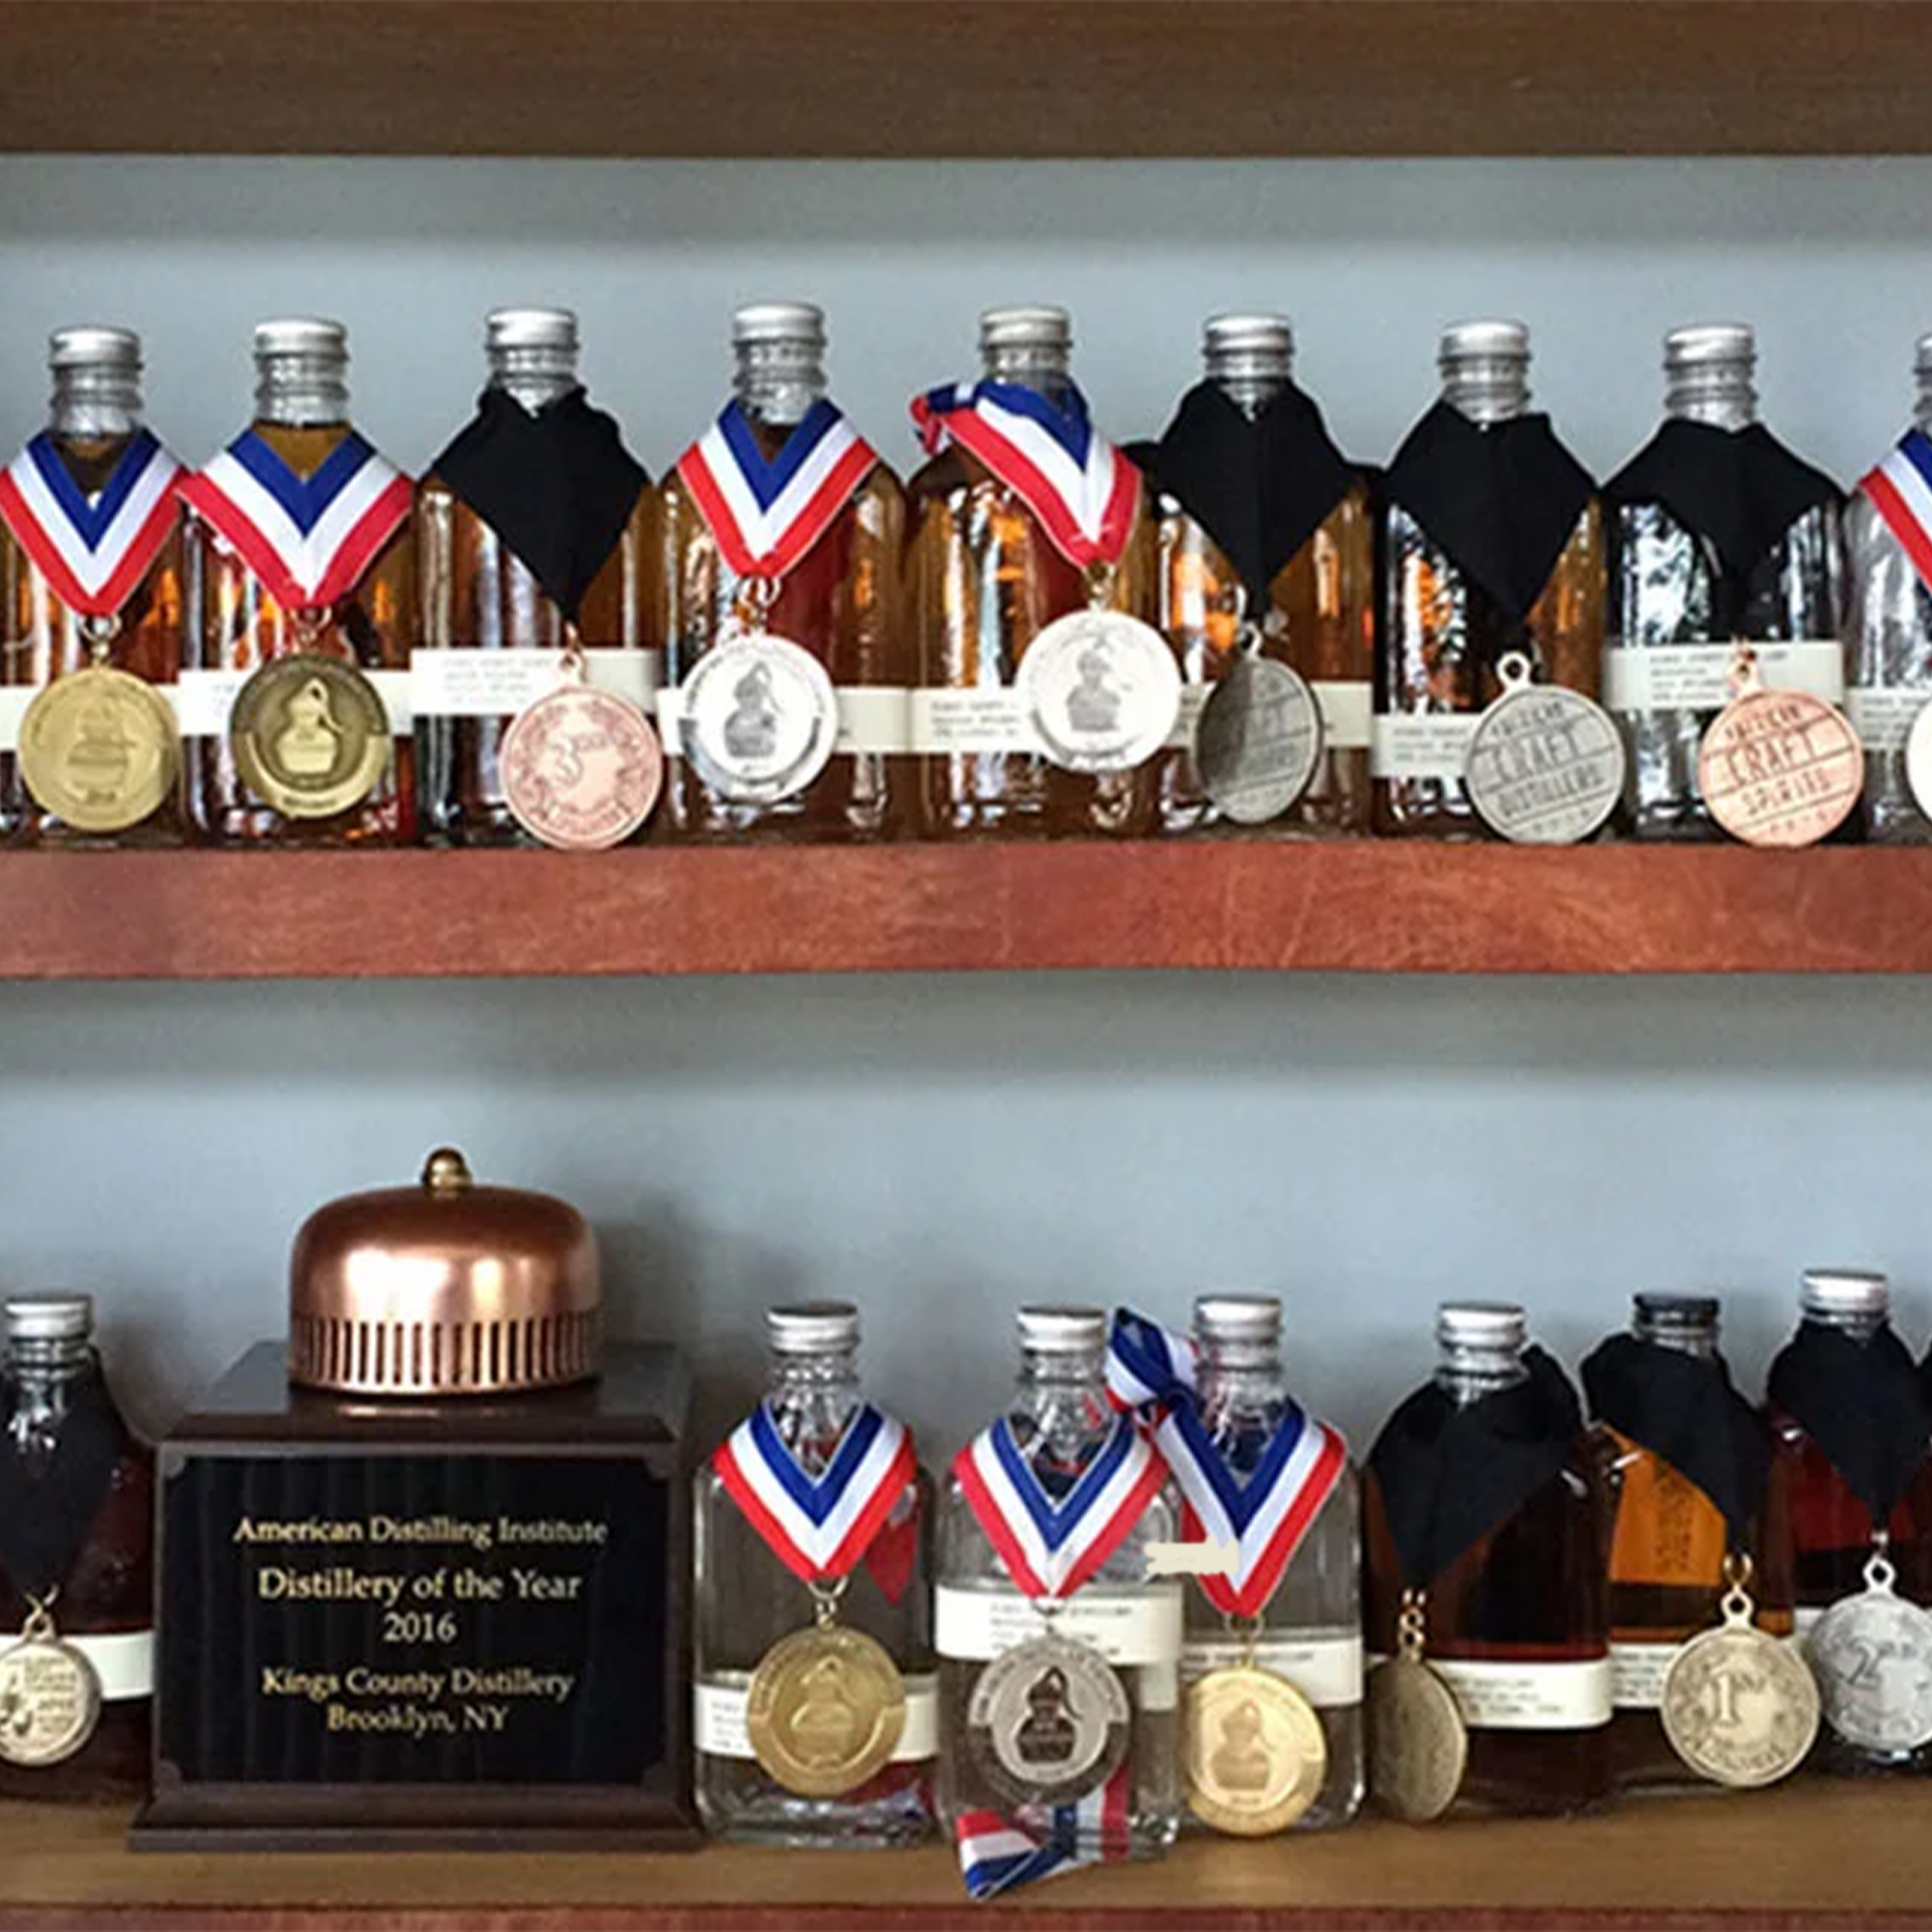 King's County Distillery Blended Bourbon